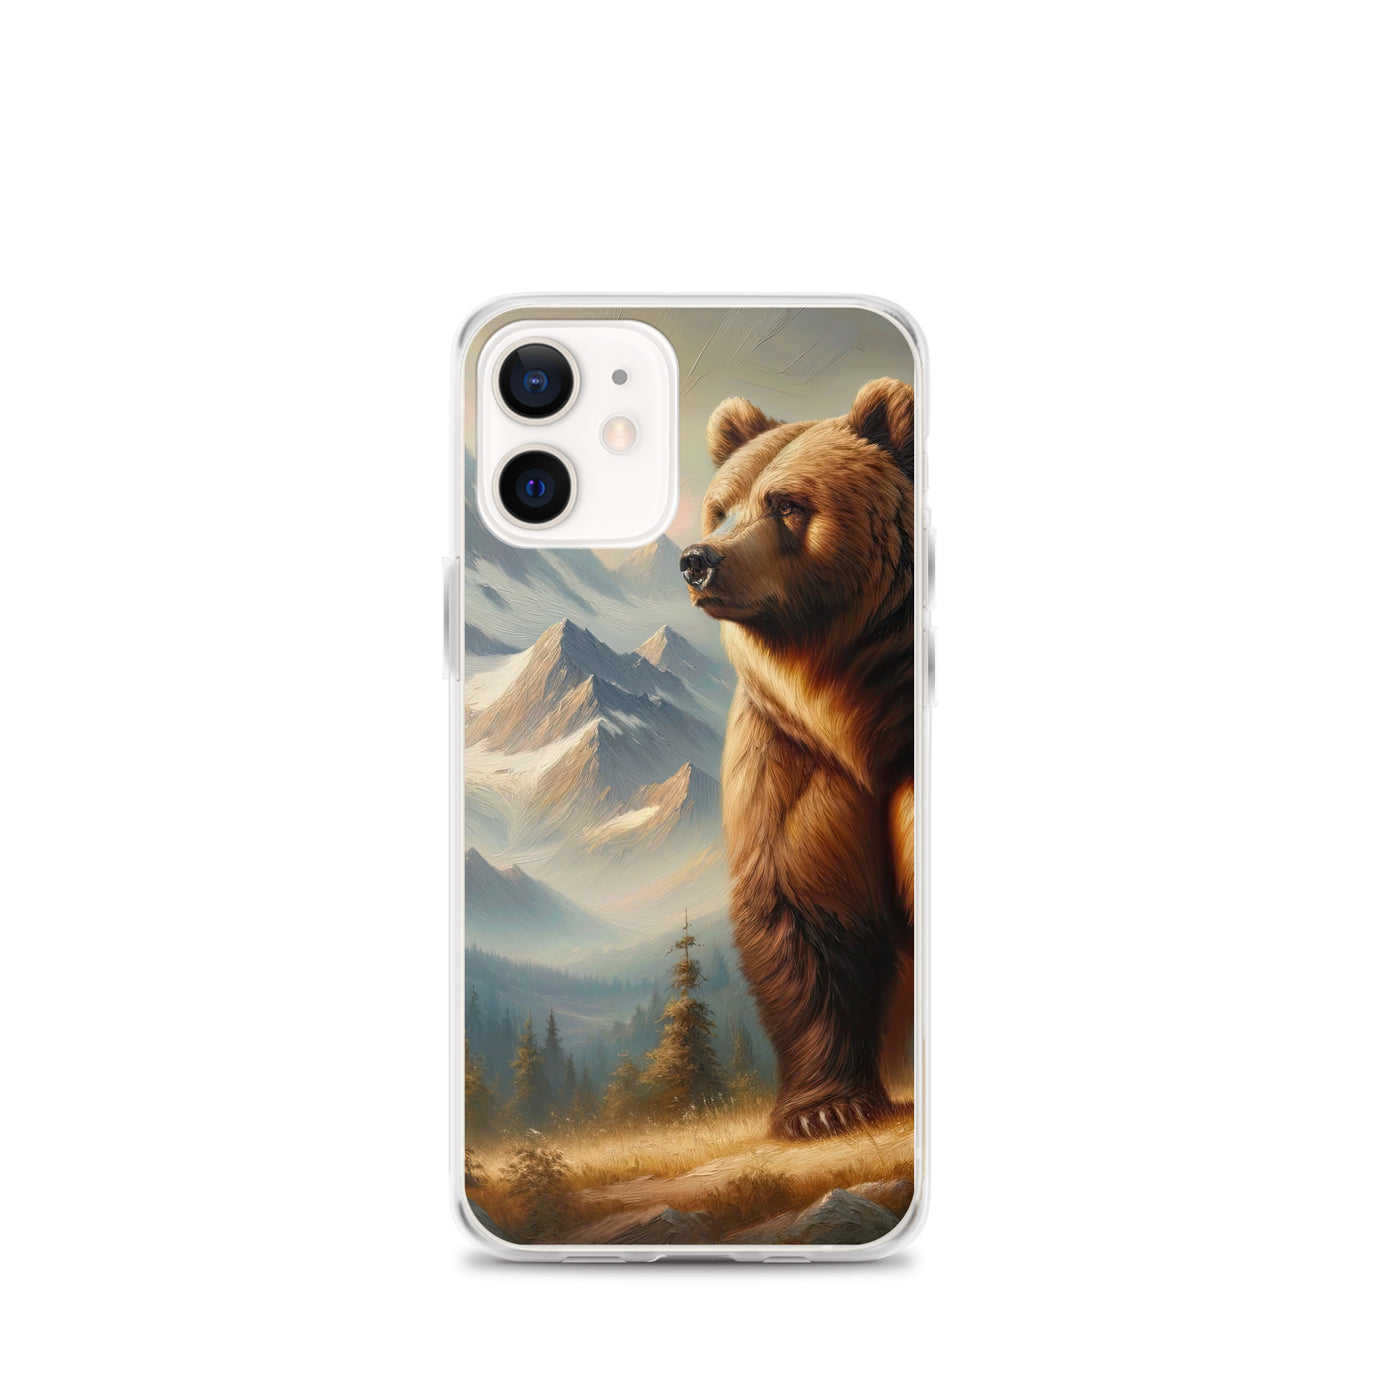 Ölgemälde eines königlichen Bären vor der majestätischen Alpenkulisse - iPhone Schutzhülle (durchsichtig) camping xxx yyy zzz iPhone 12 mini